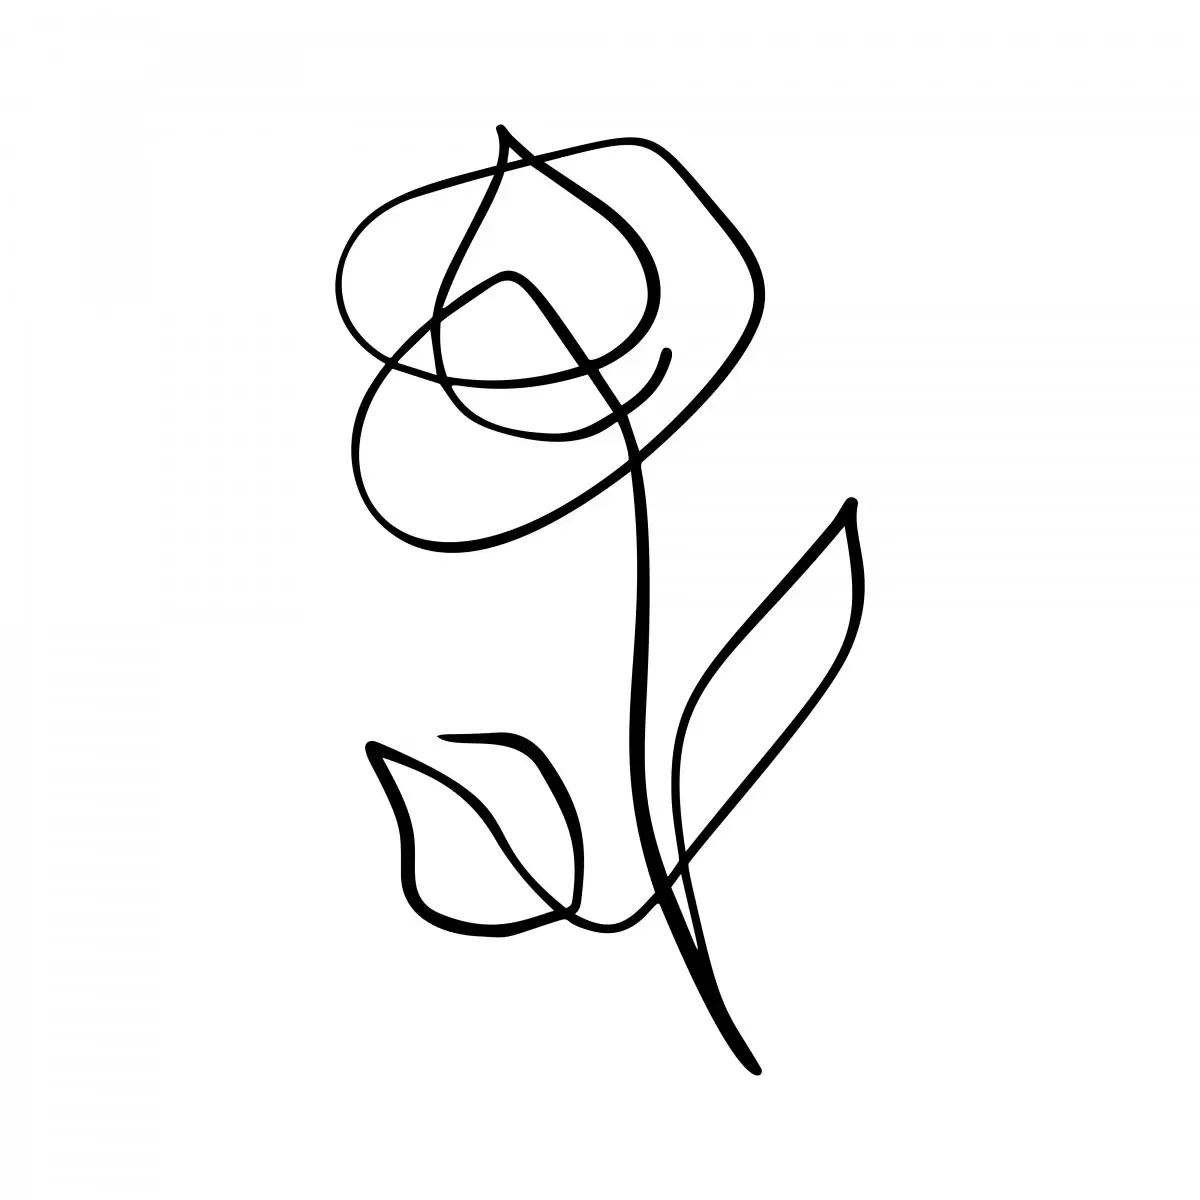 ורד בקו אחד - Artpicked - סלון בסגנון מינימליסטי איור רישום בצבע סטים בסגנון מודרני  - מק''ט: 331769